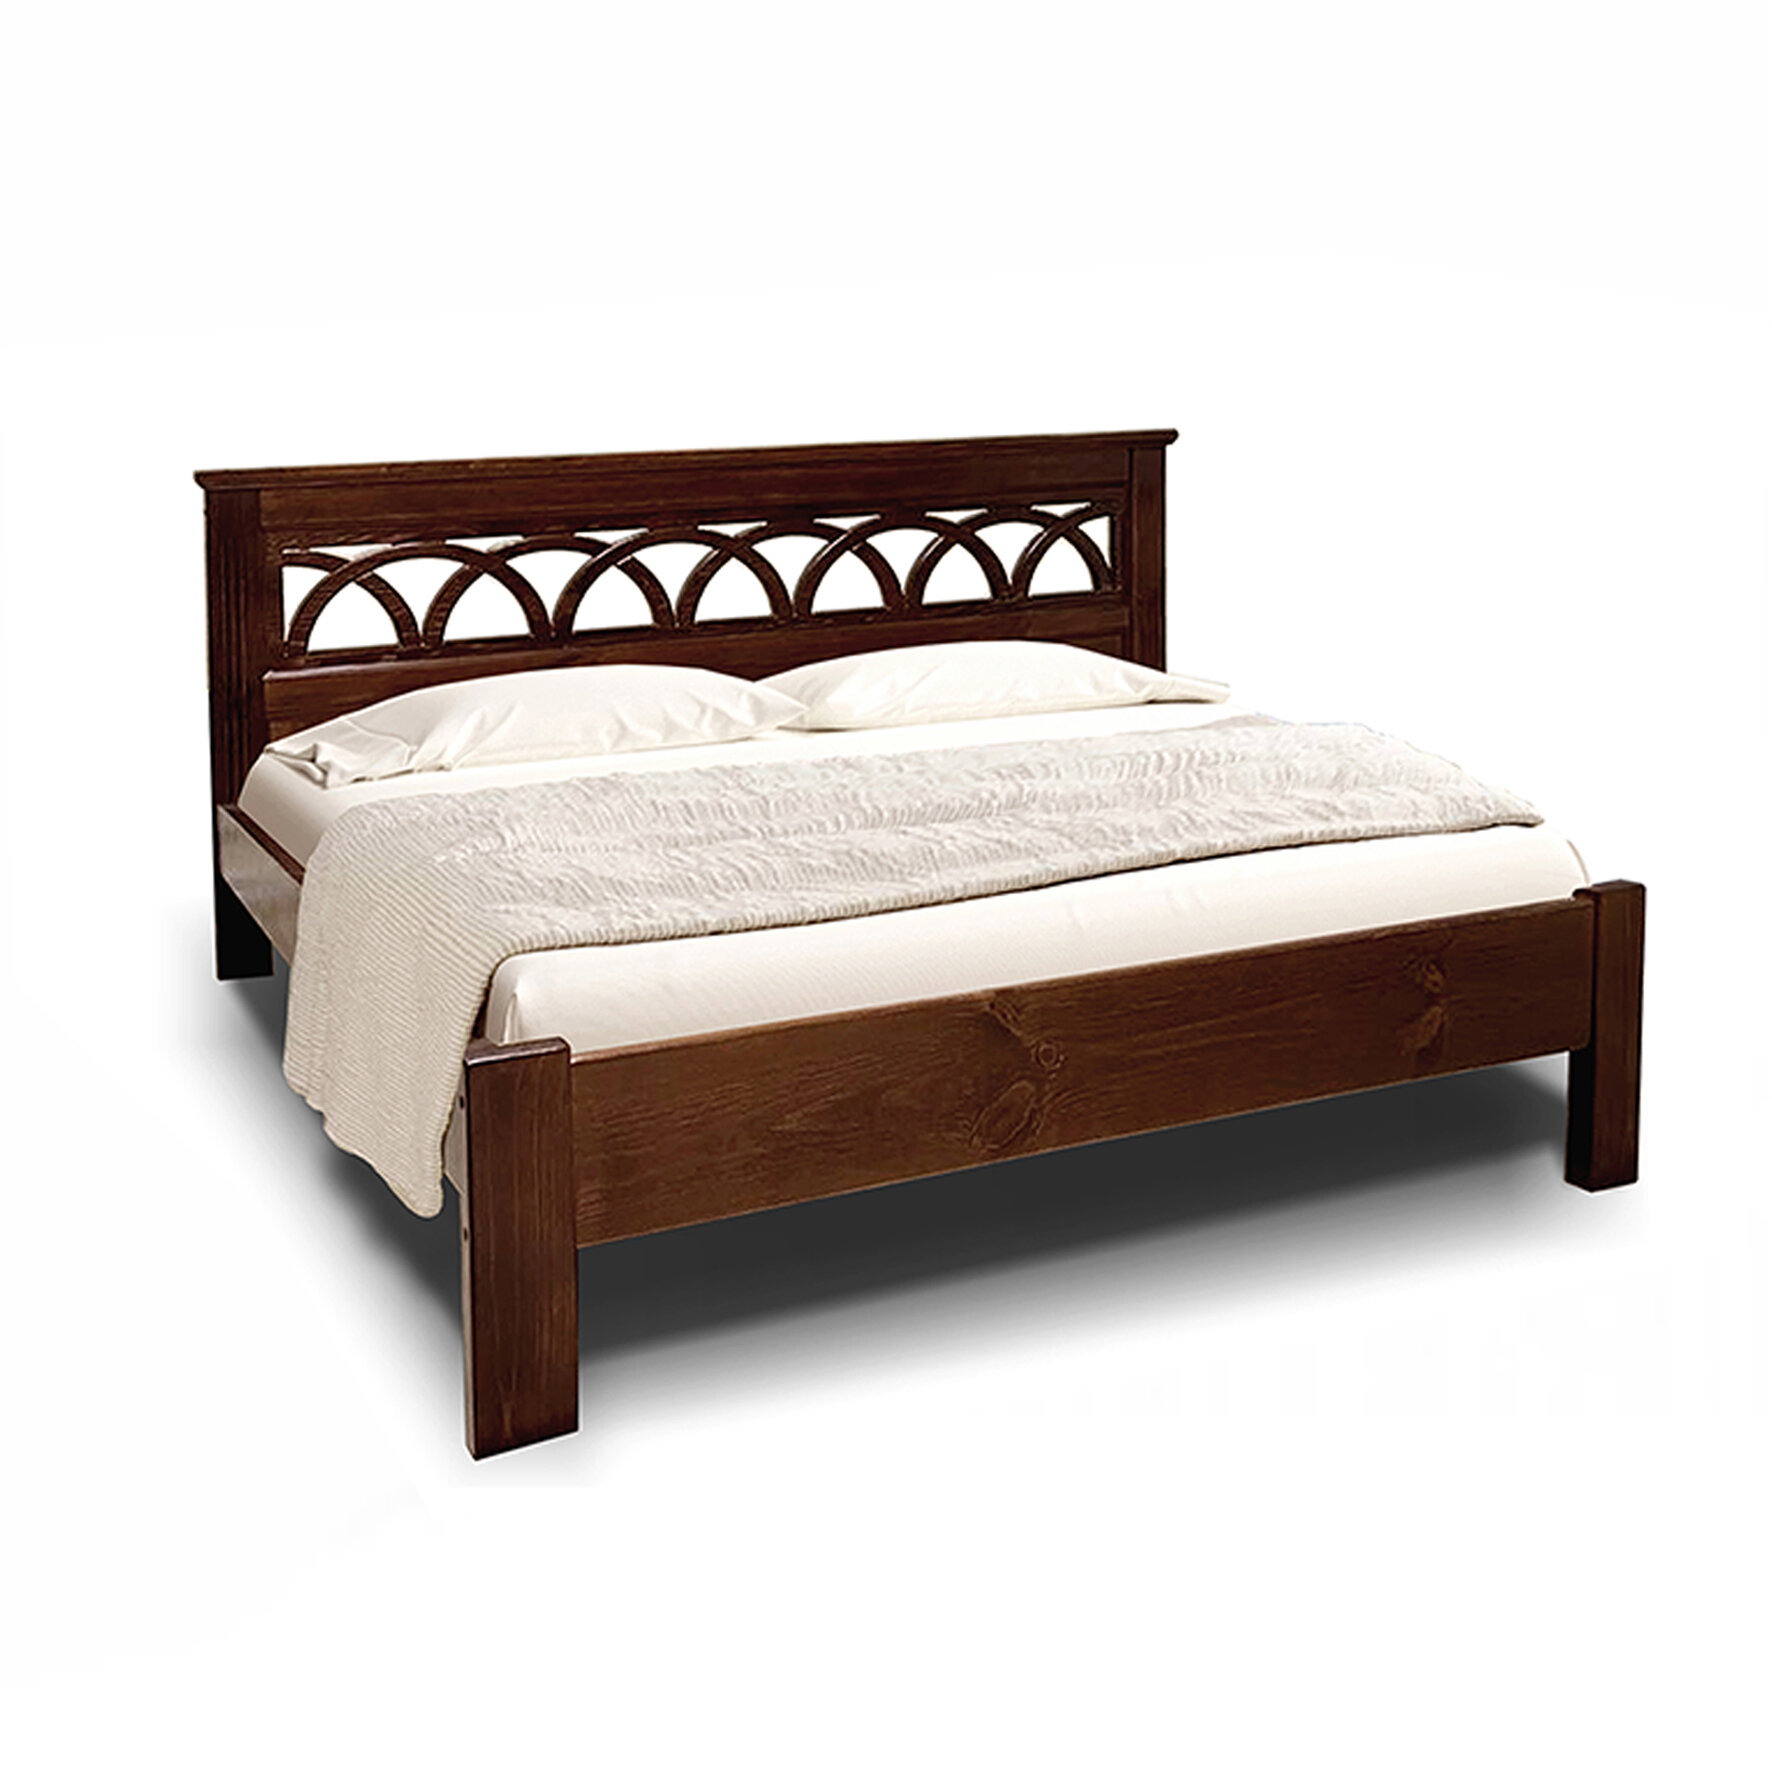 Деревянная кровать Ютта тахта, 120х200 см (габариты 130х210 см).